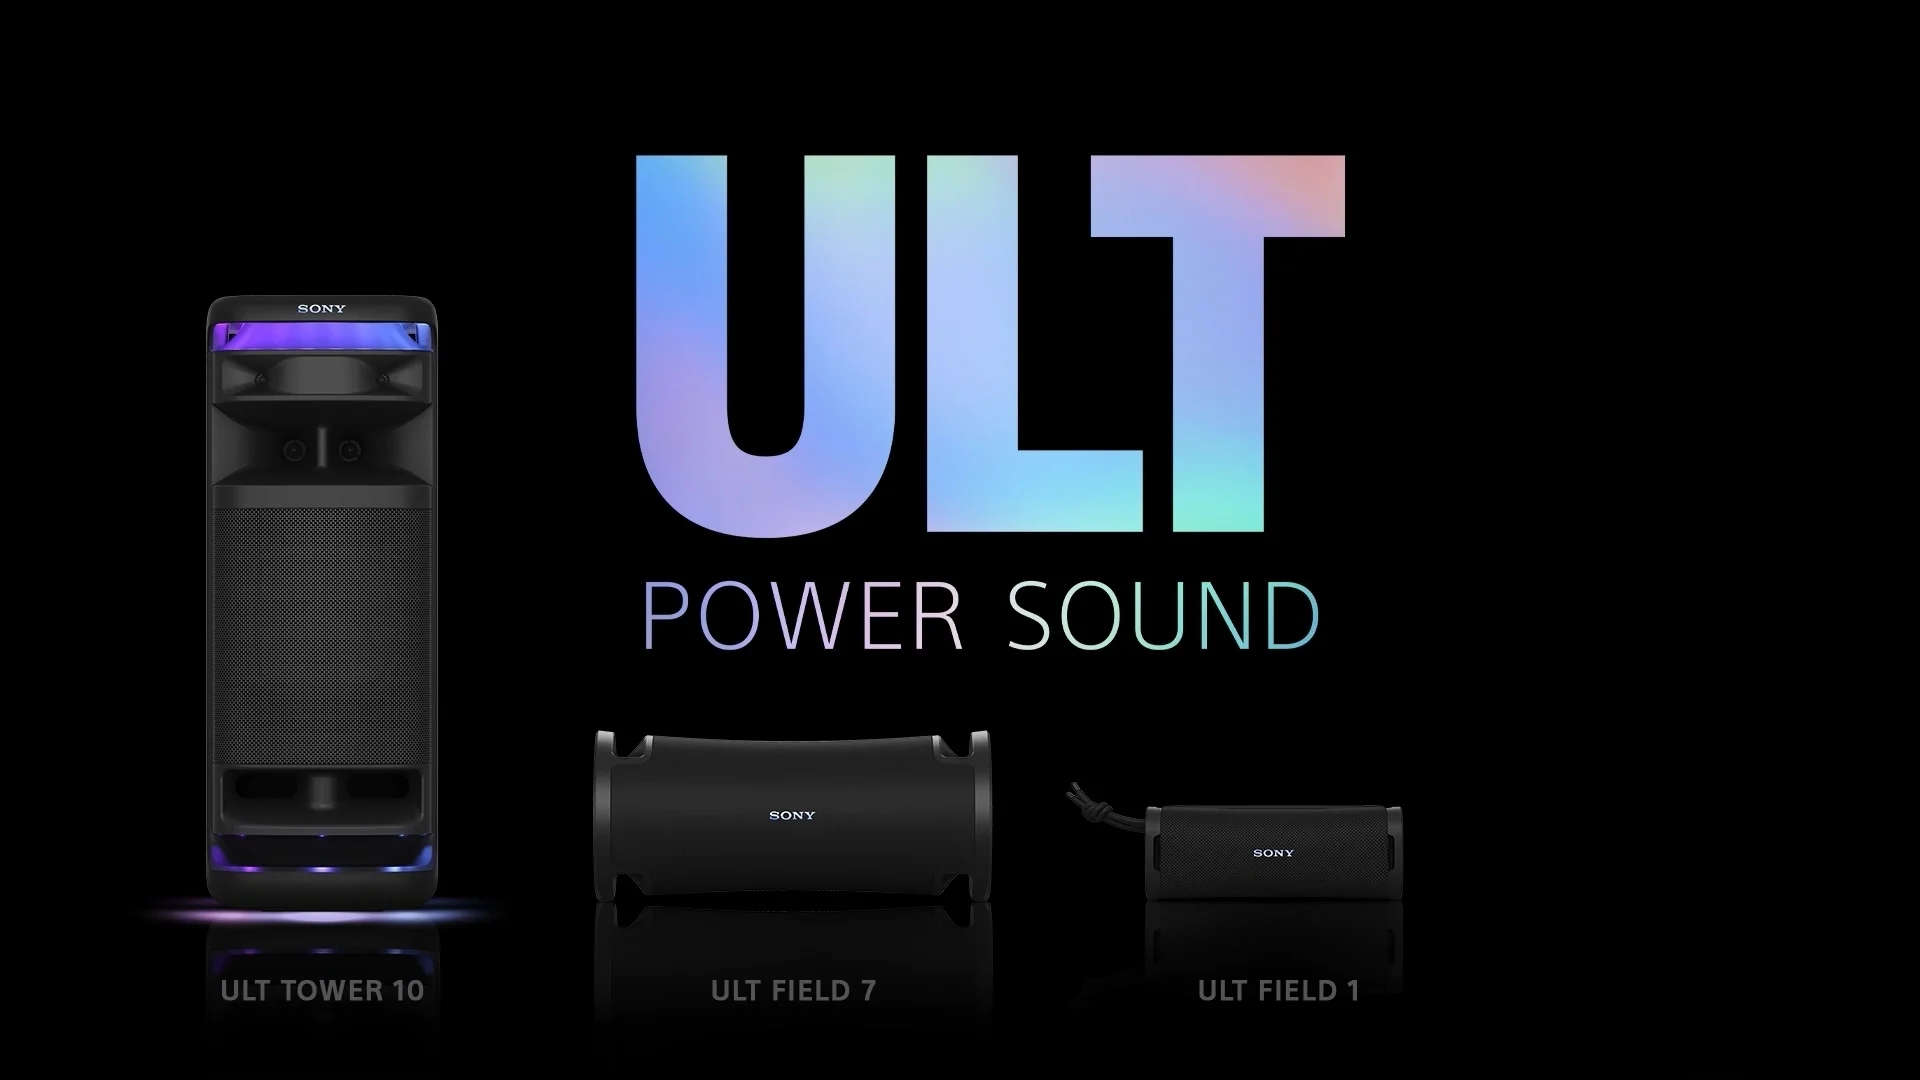 Sony har presenterat nya Bluetooth-högtalare i ULT Power-serien - ULT Field 1, ULT Field 7 och ULT Tower 10